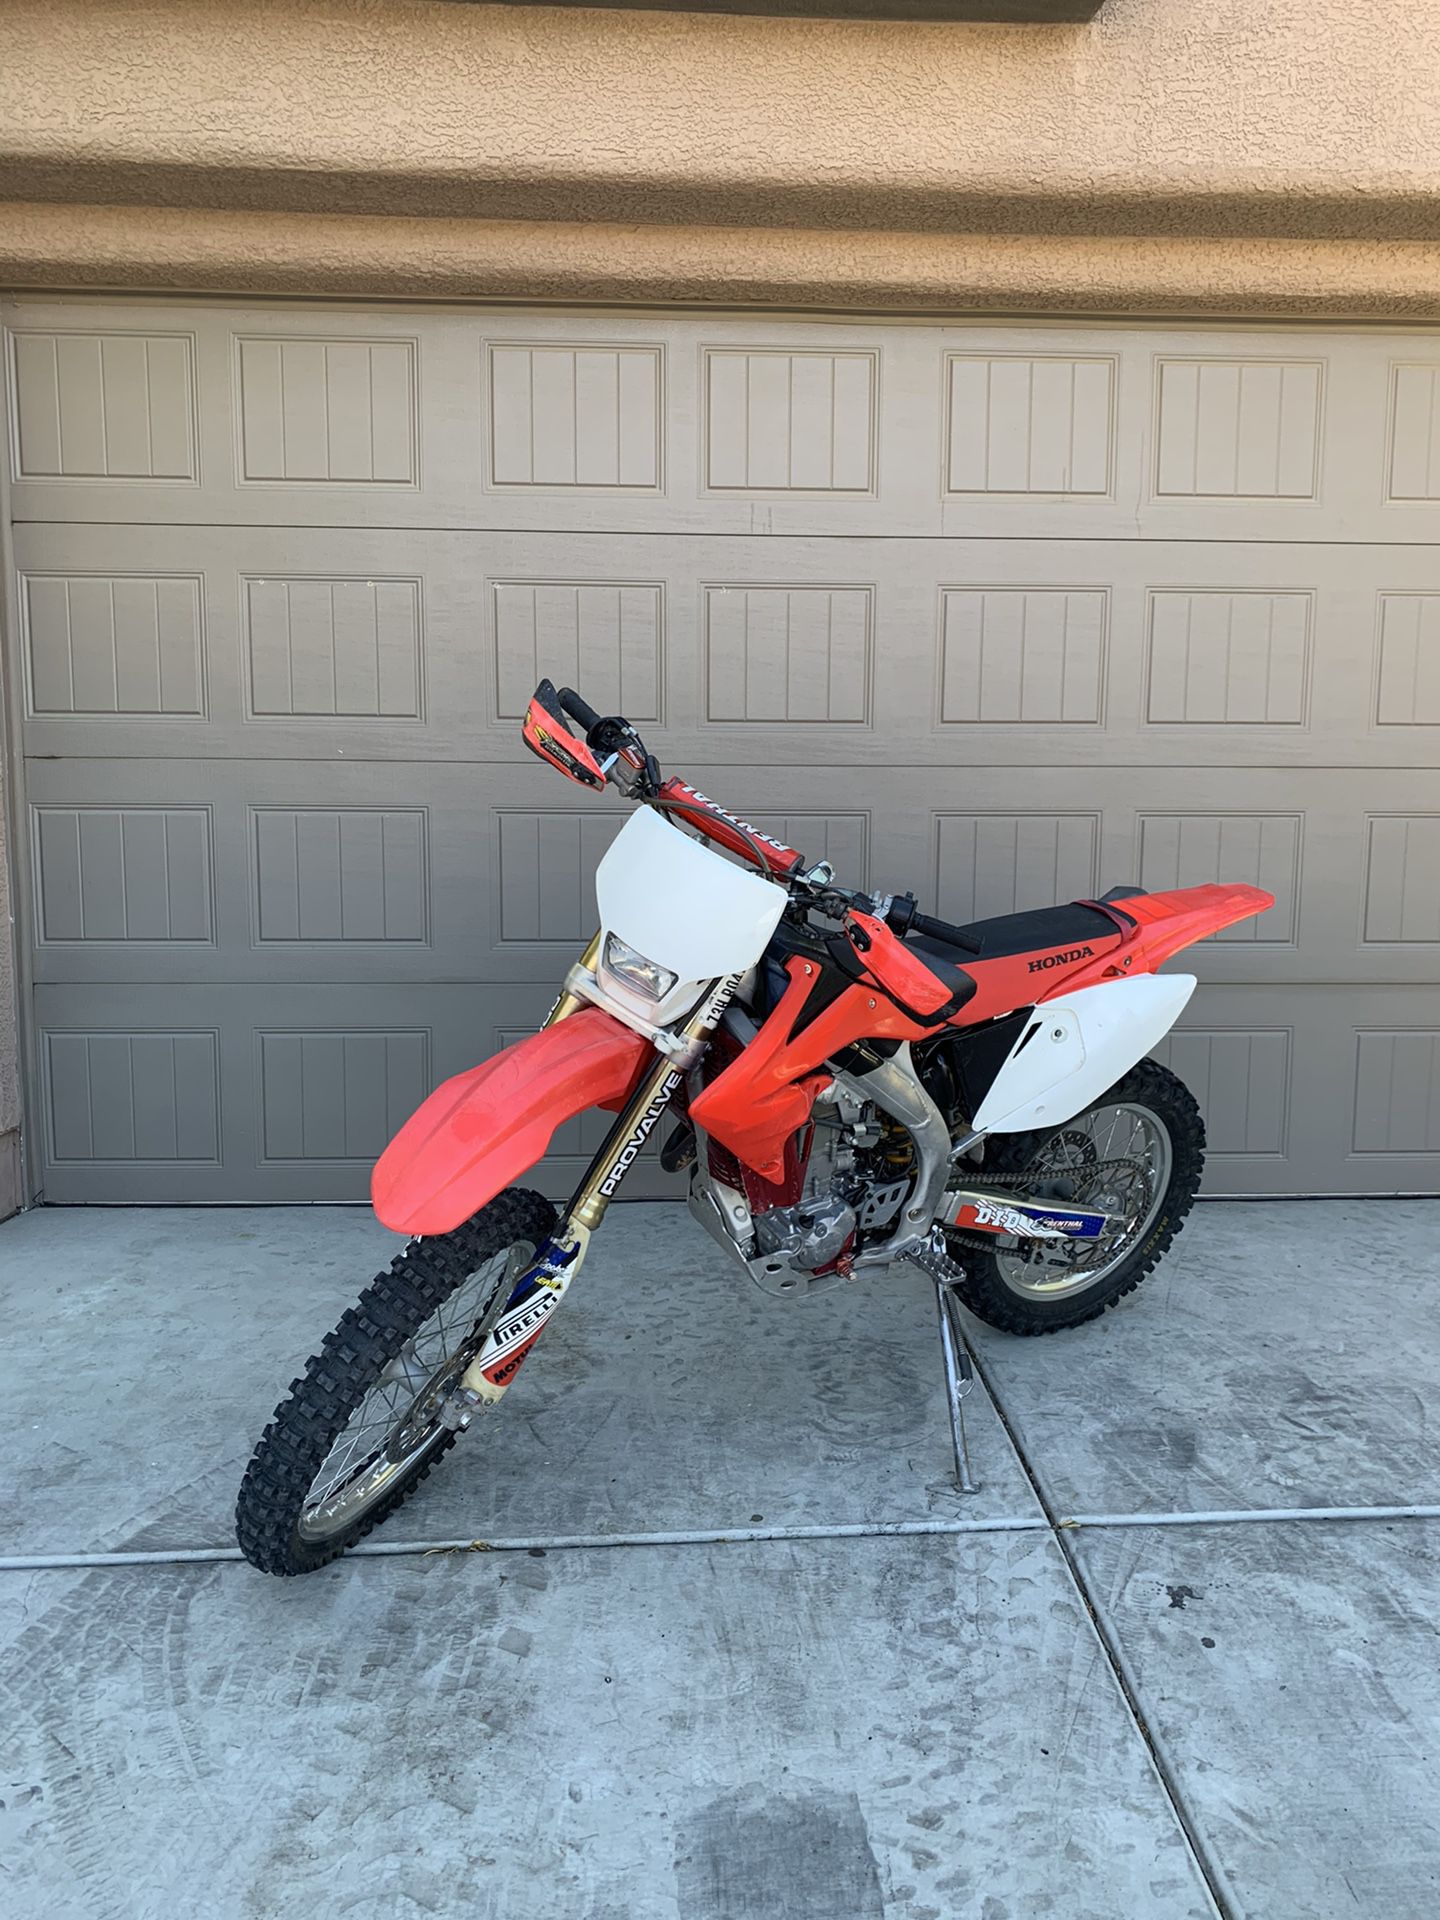 Dirt bike CRF450X (Honda)